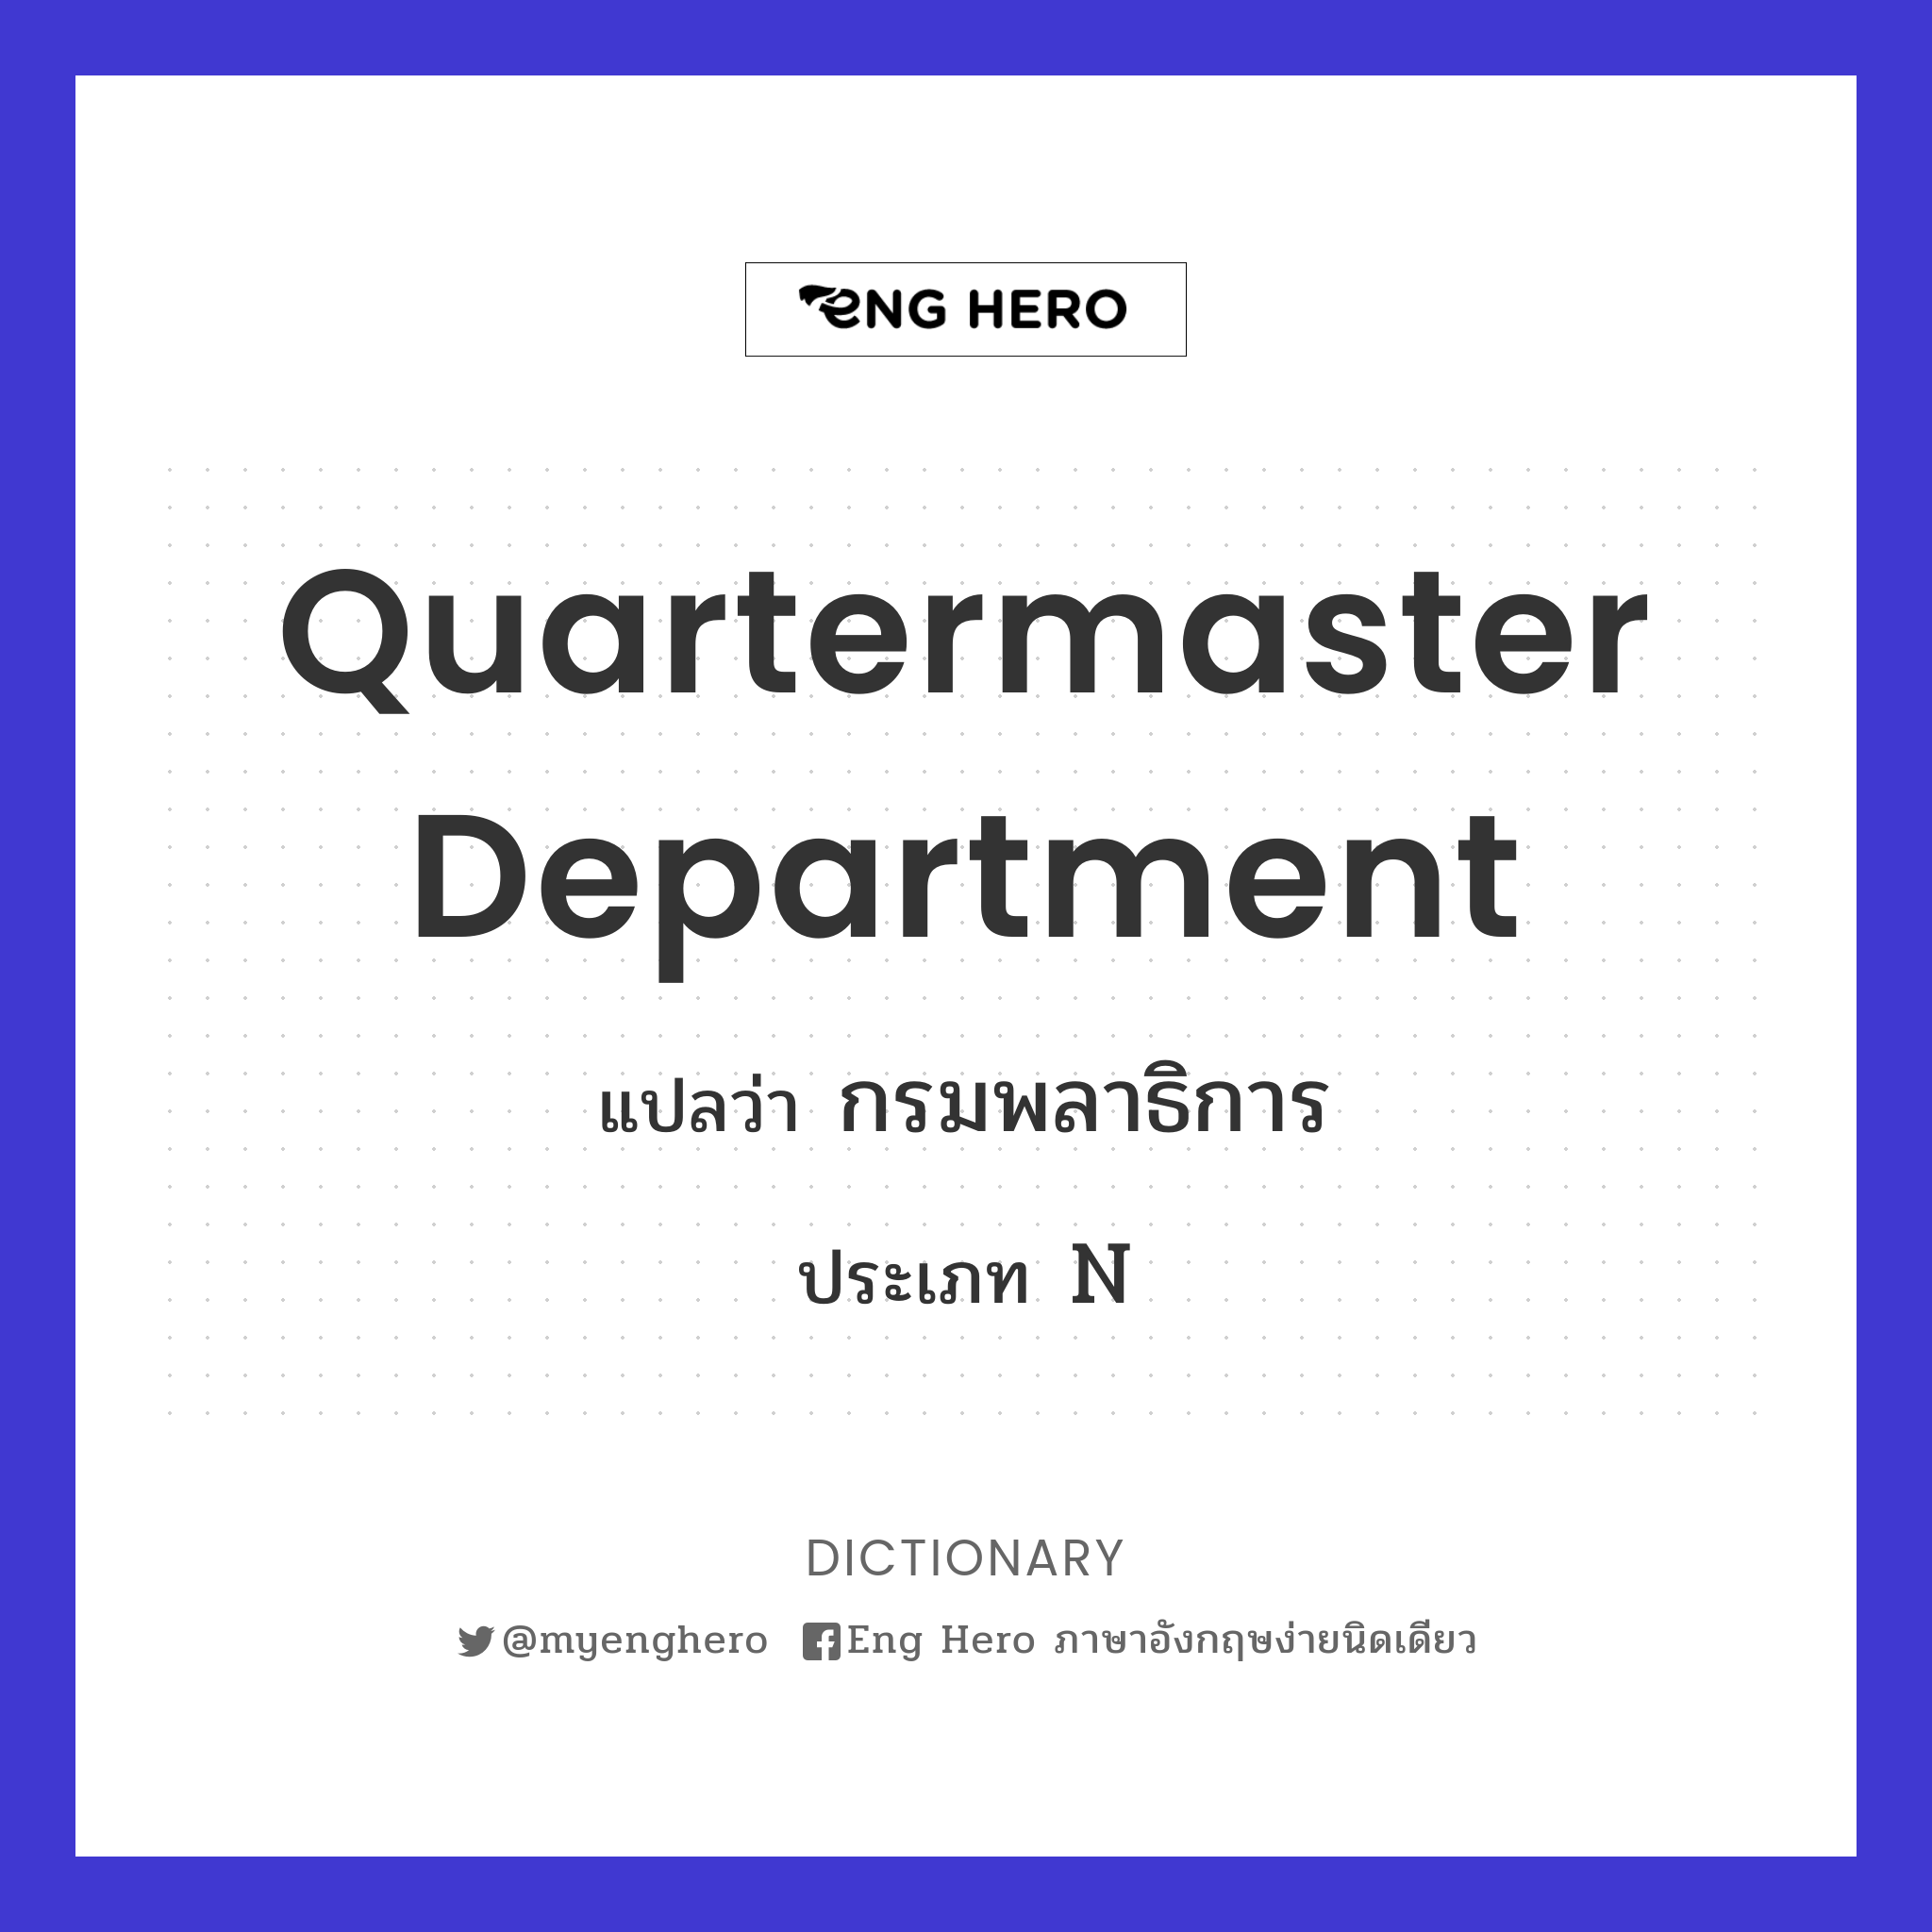 Quartermaster Department